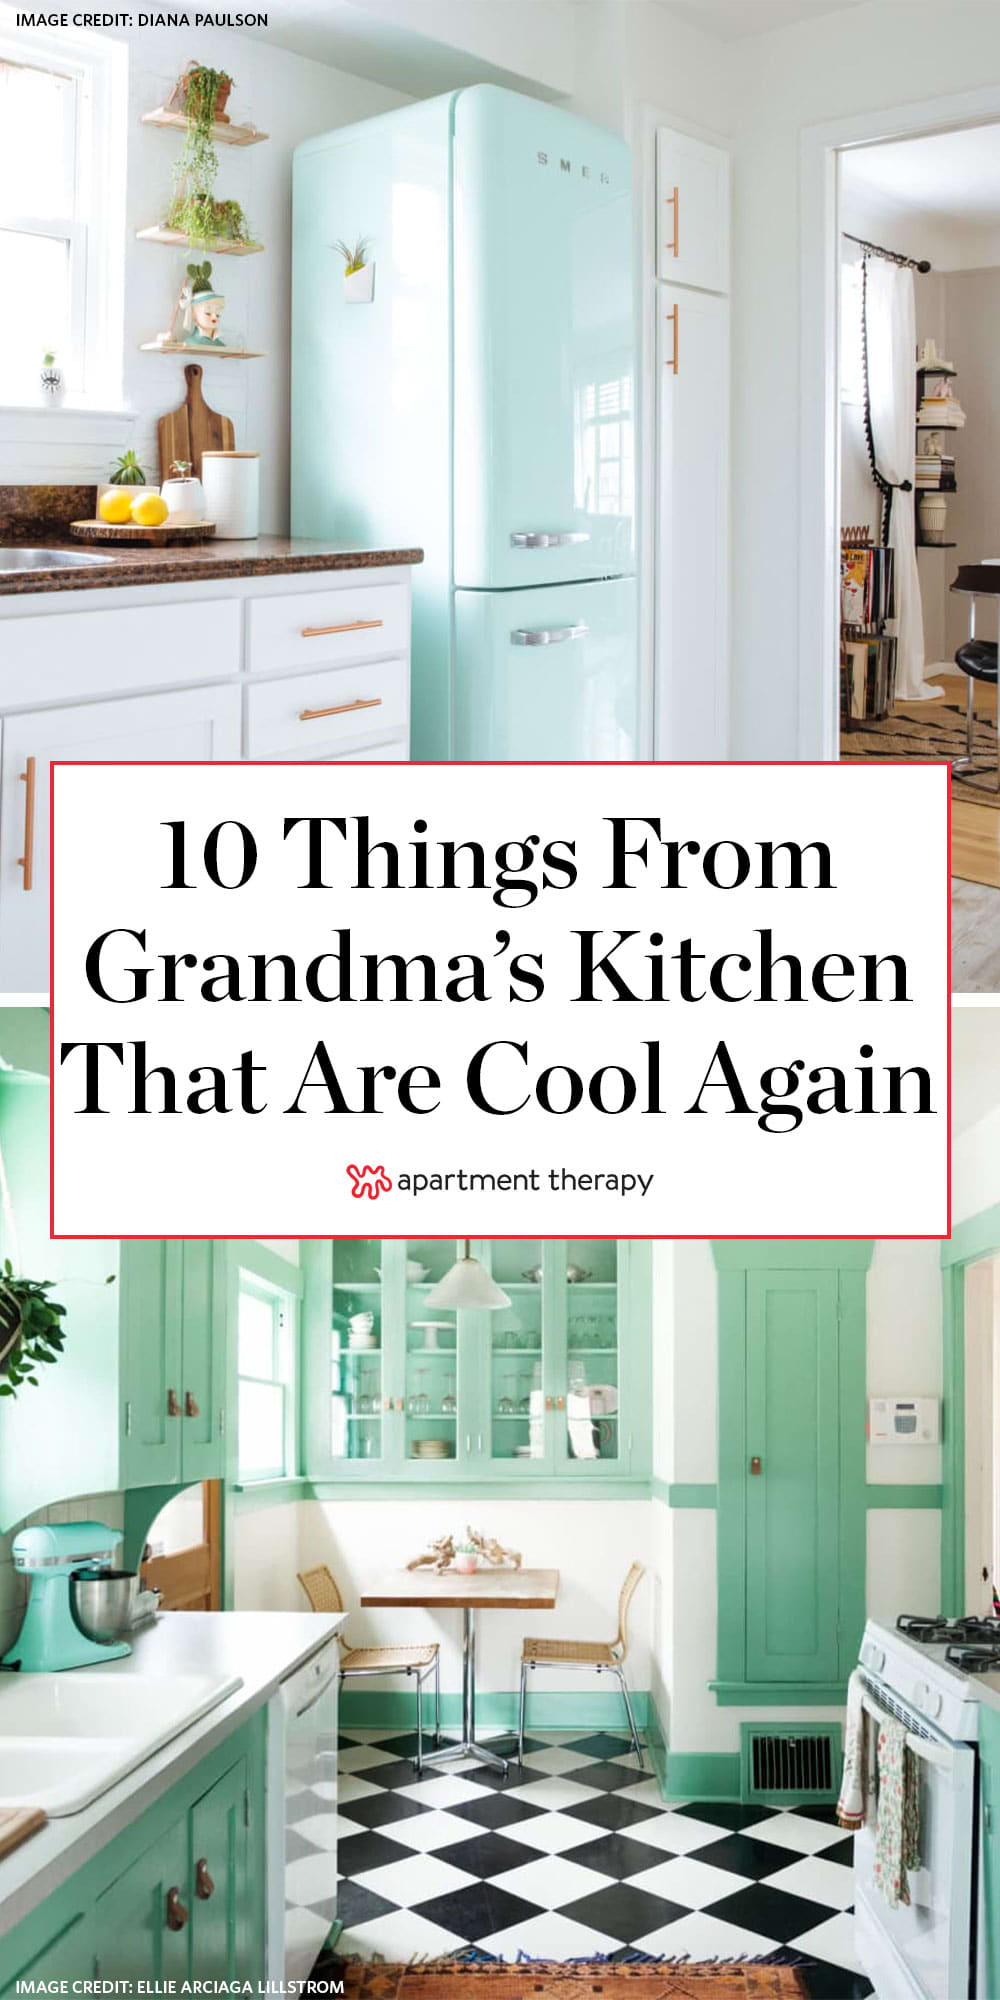 grandma's kitchen  Kitchen decor, Retro kitchen, Chic kitchen